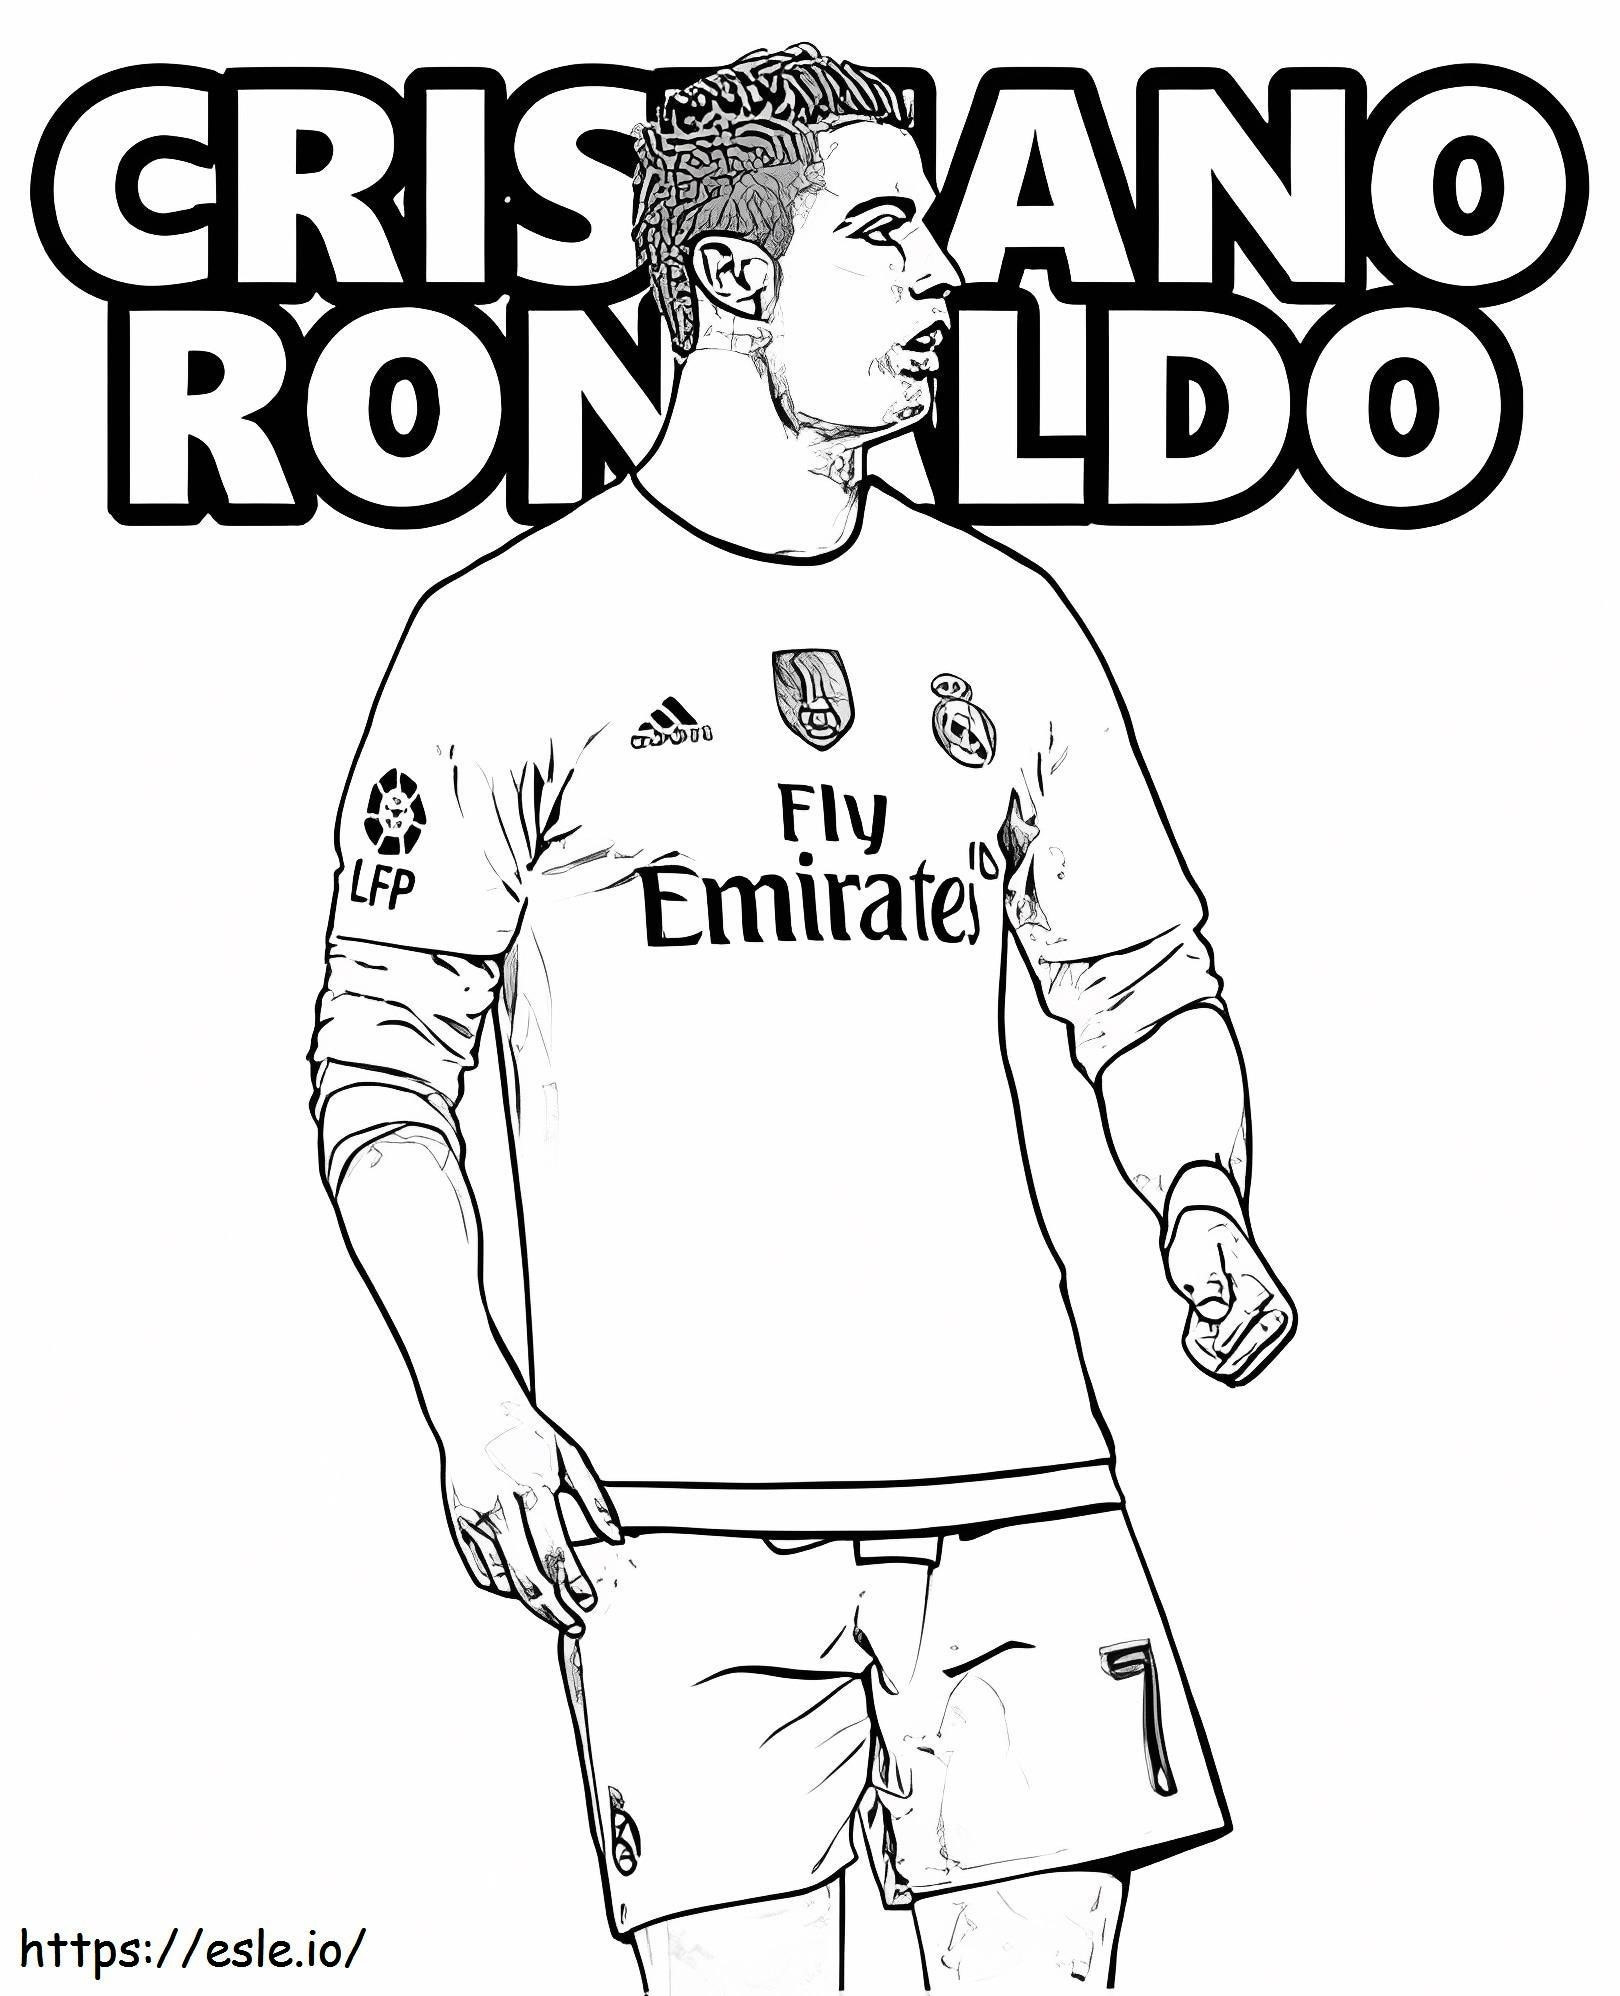 Genial Cristiano Ronaldo para colorear